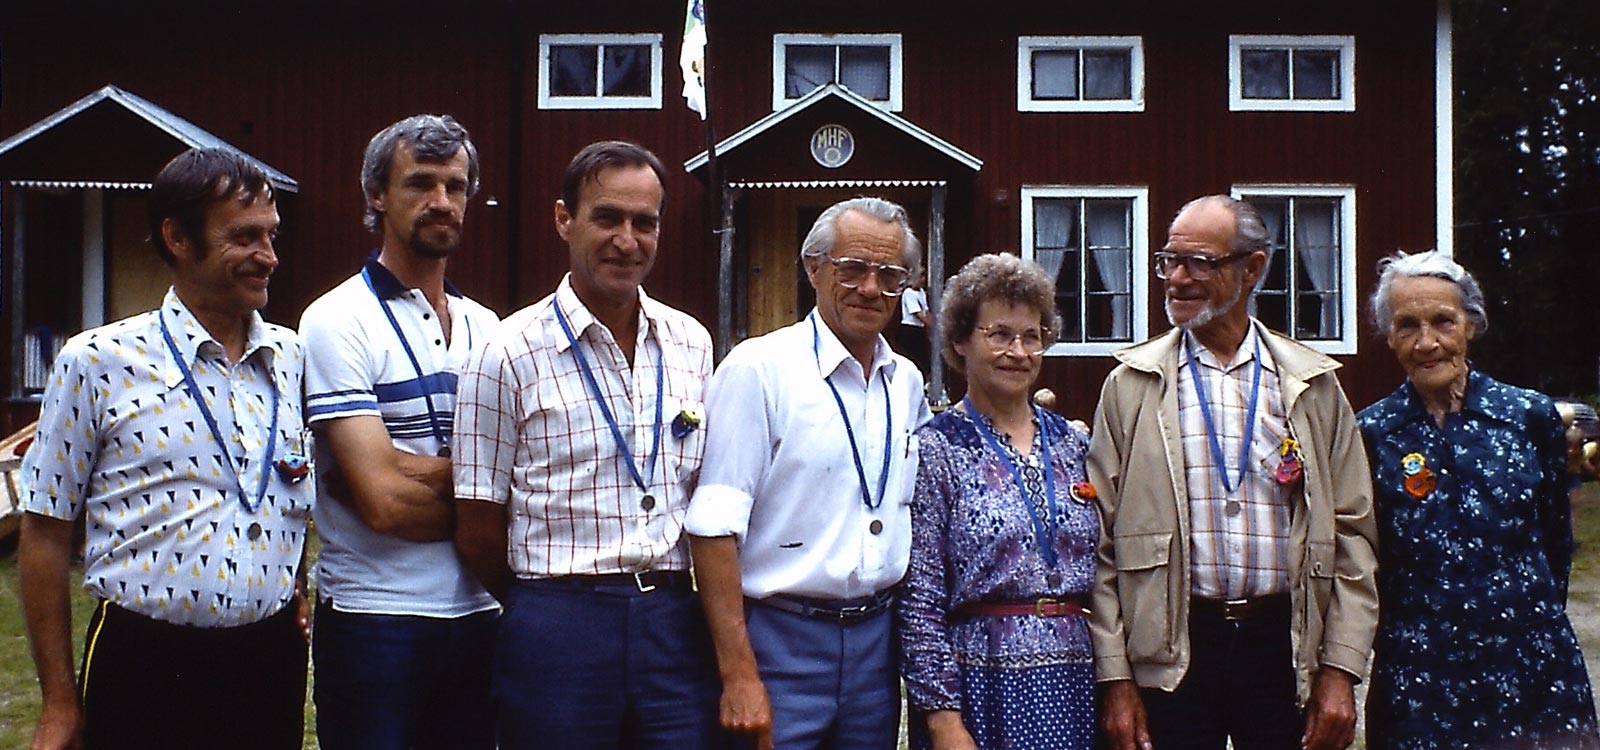 Sex av syskonen tillsammans med mor Karin i Bergsjö 1984, bilderna kommer från Erics dia-samling. Klicka på bilden för att se övriga bilder.